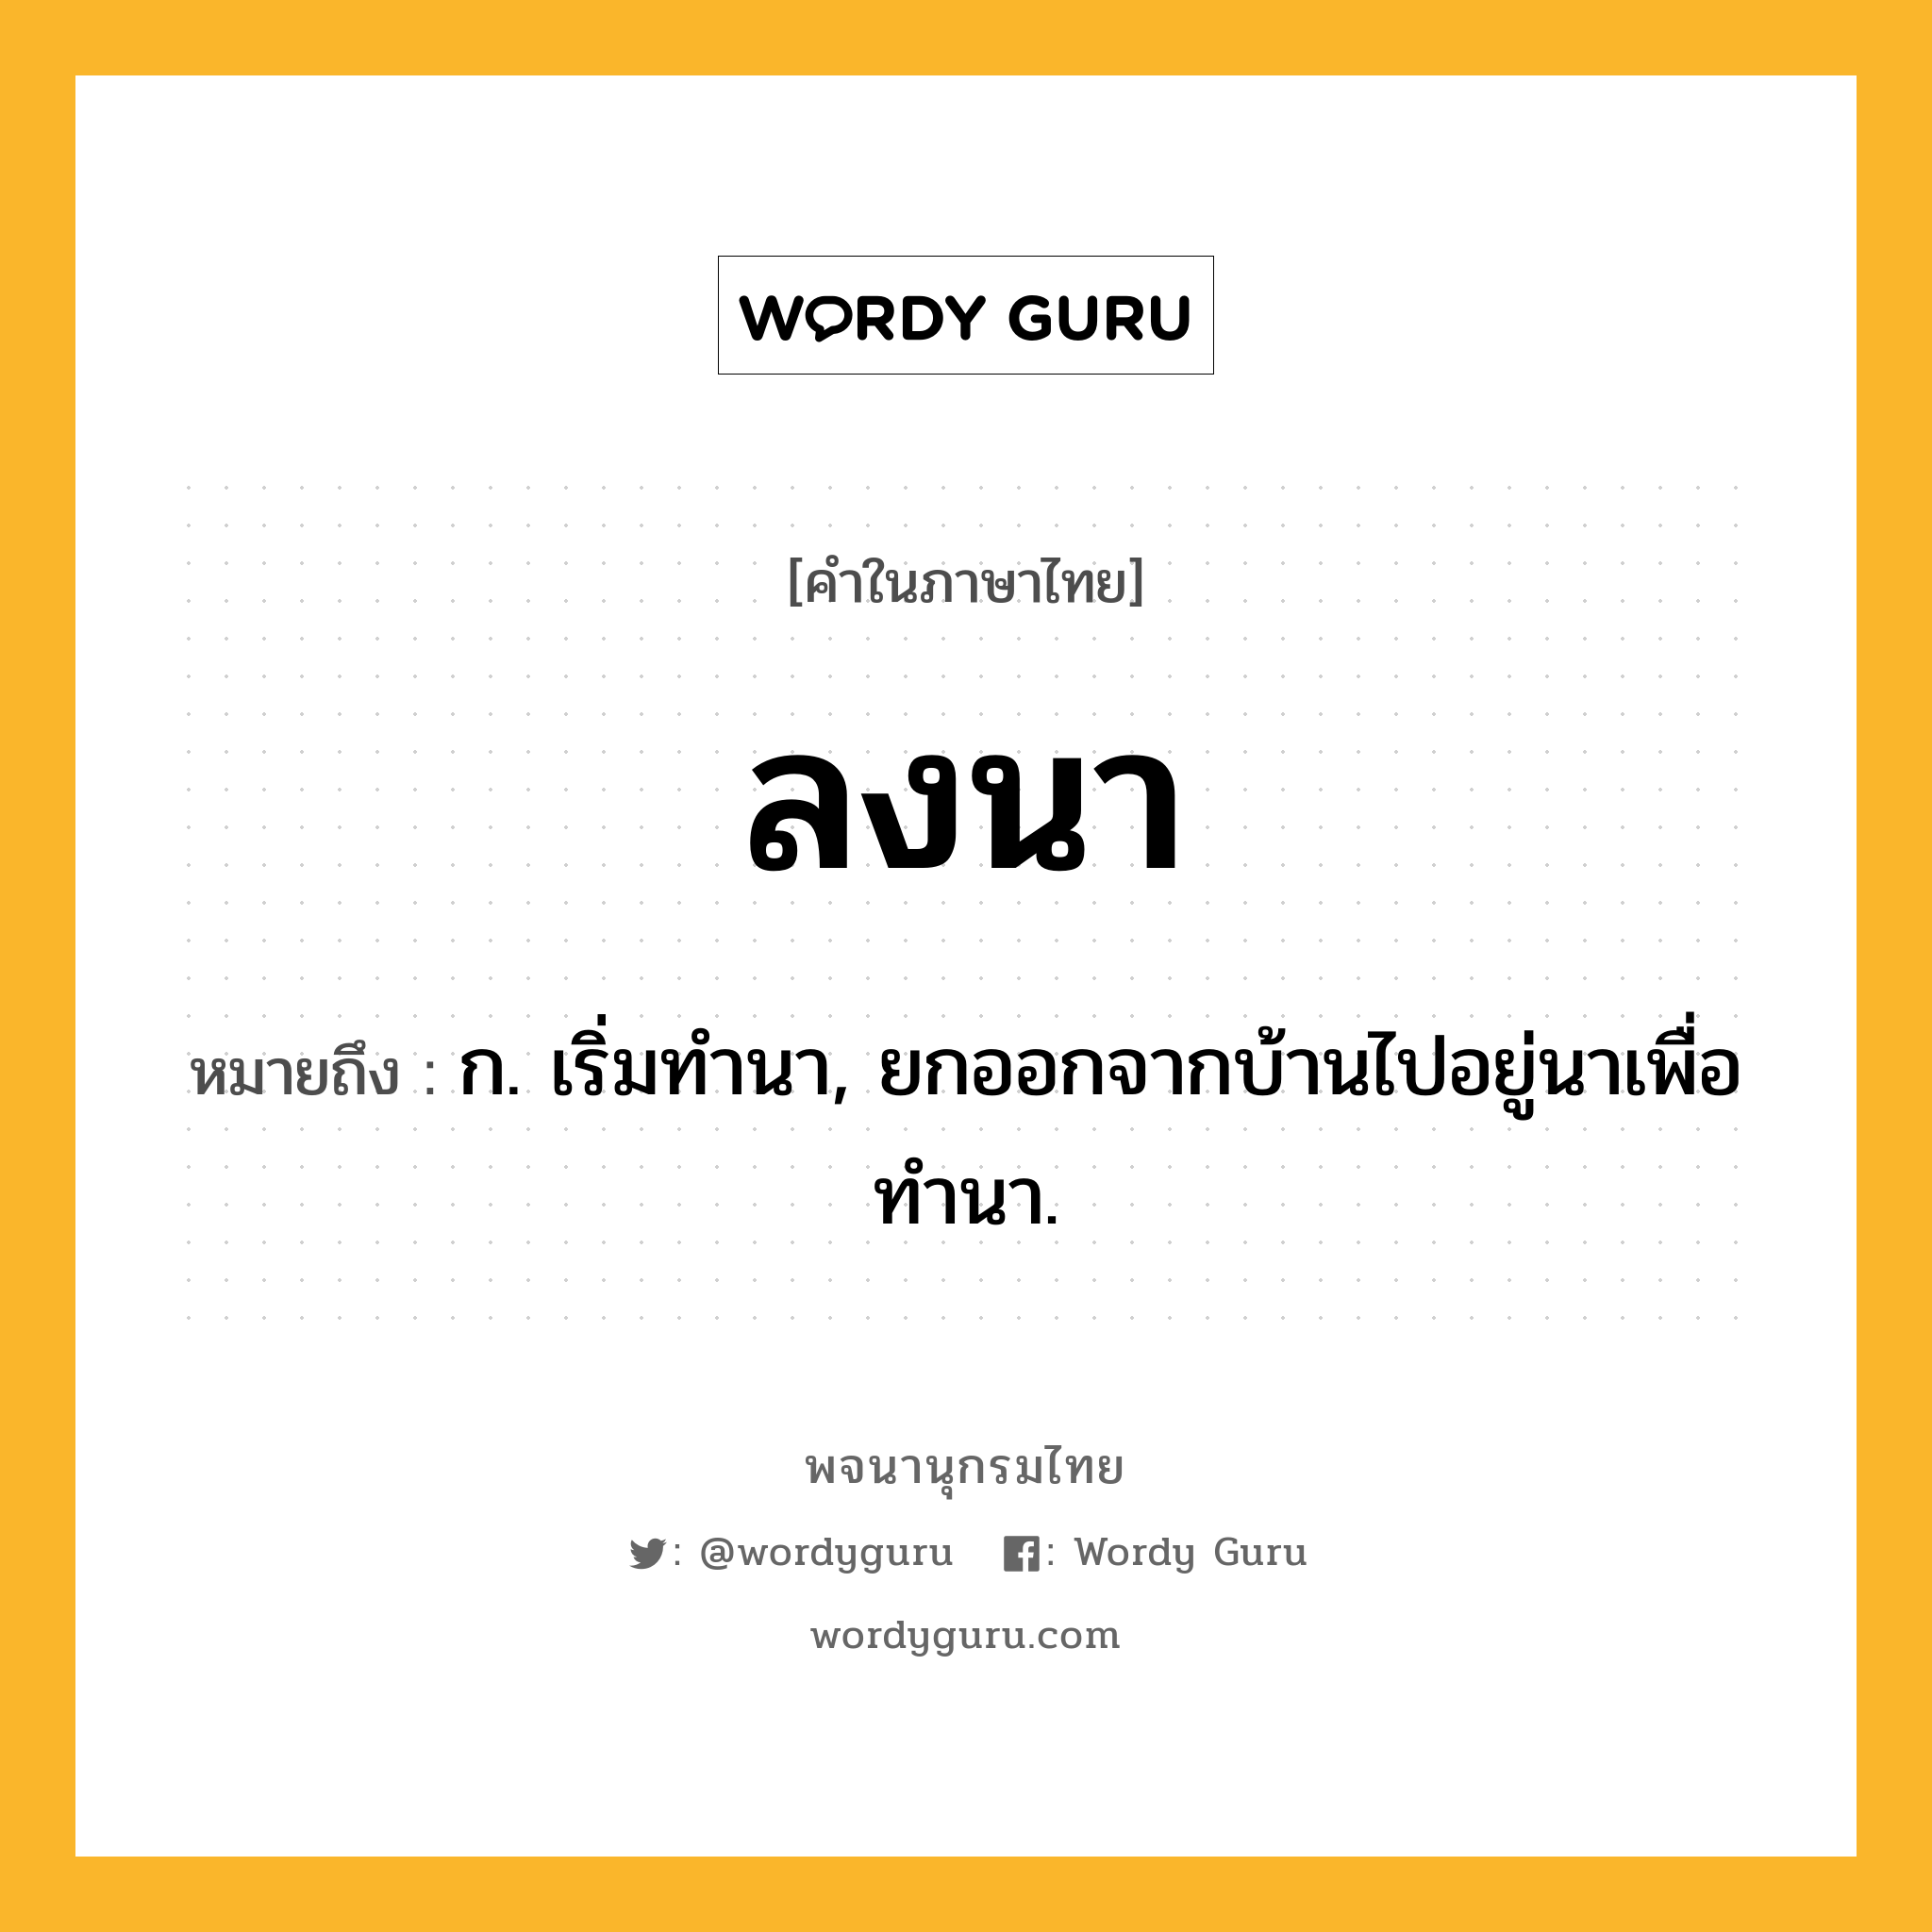 ลงนา ความหมาย หมายถึงอะไร?, คำในภาษาไทย ลงนา หมายถึง ก. เริ่มทํานา, ยกออกจากบ้านไปอยู่นาเพื่อทํานา.